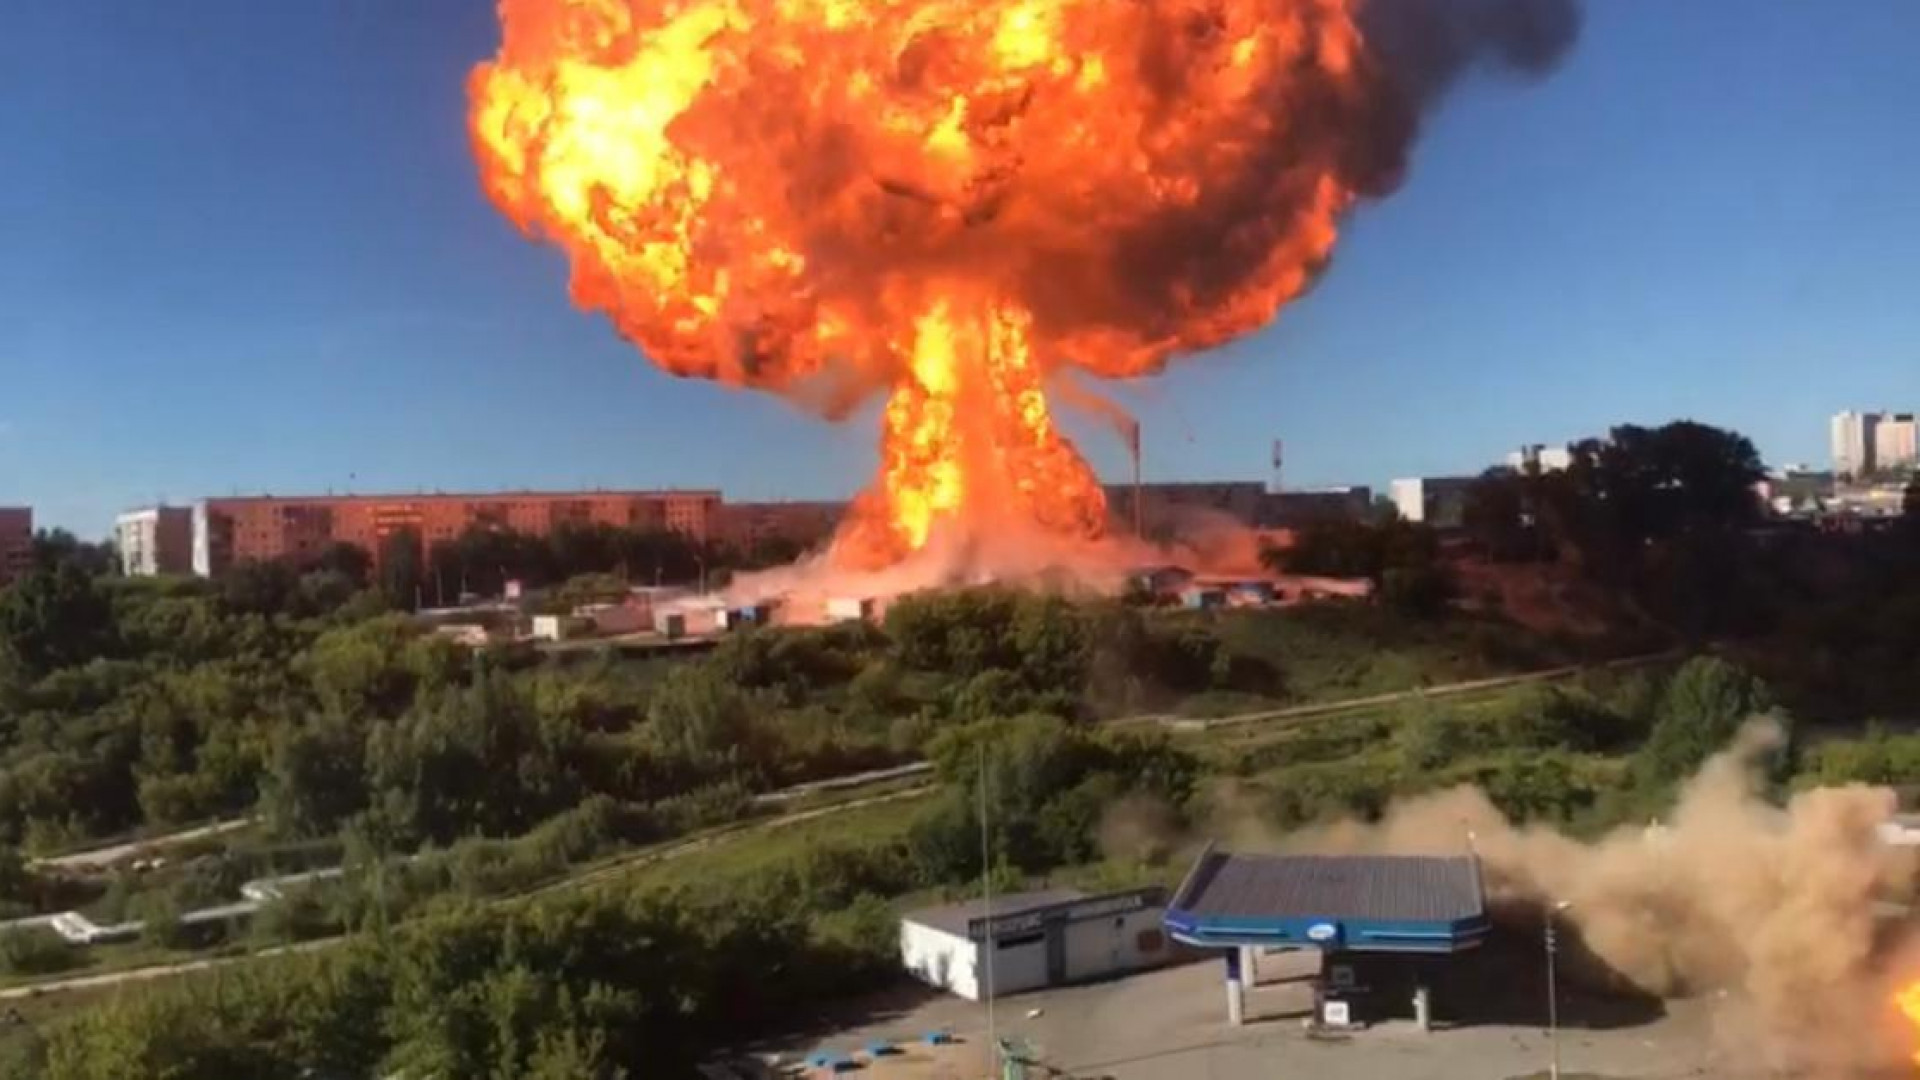 18 июня 2021 г. Взрыв АЗС В Новосибирске 14 06 2021. Взрыв в Новосибирске 14-06-2021. Взрыв газовой заправки в Новосибирске. Взрыв газа в Новосибирске 2021.